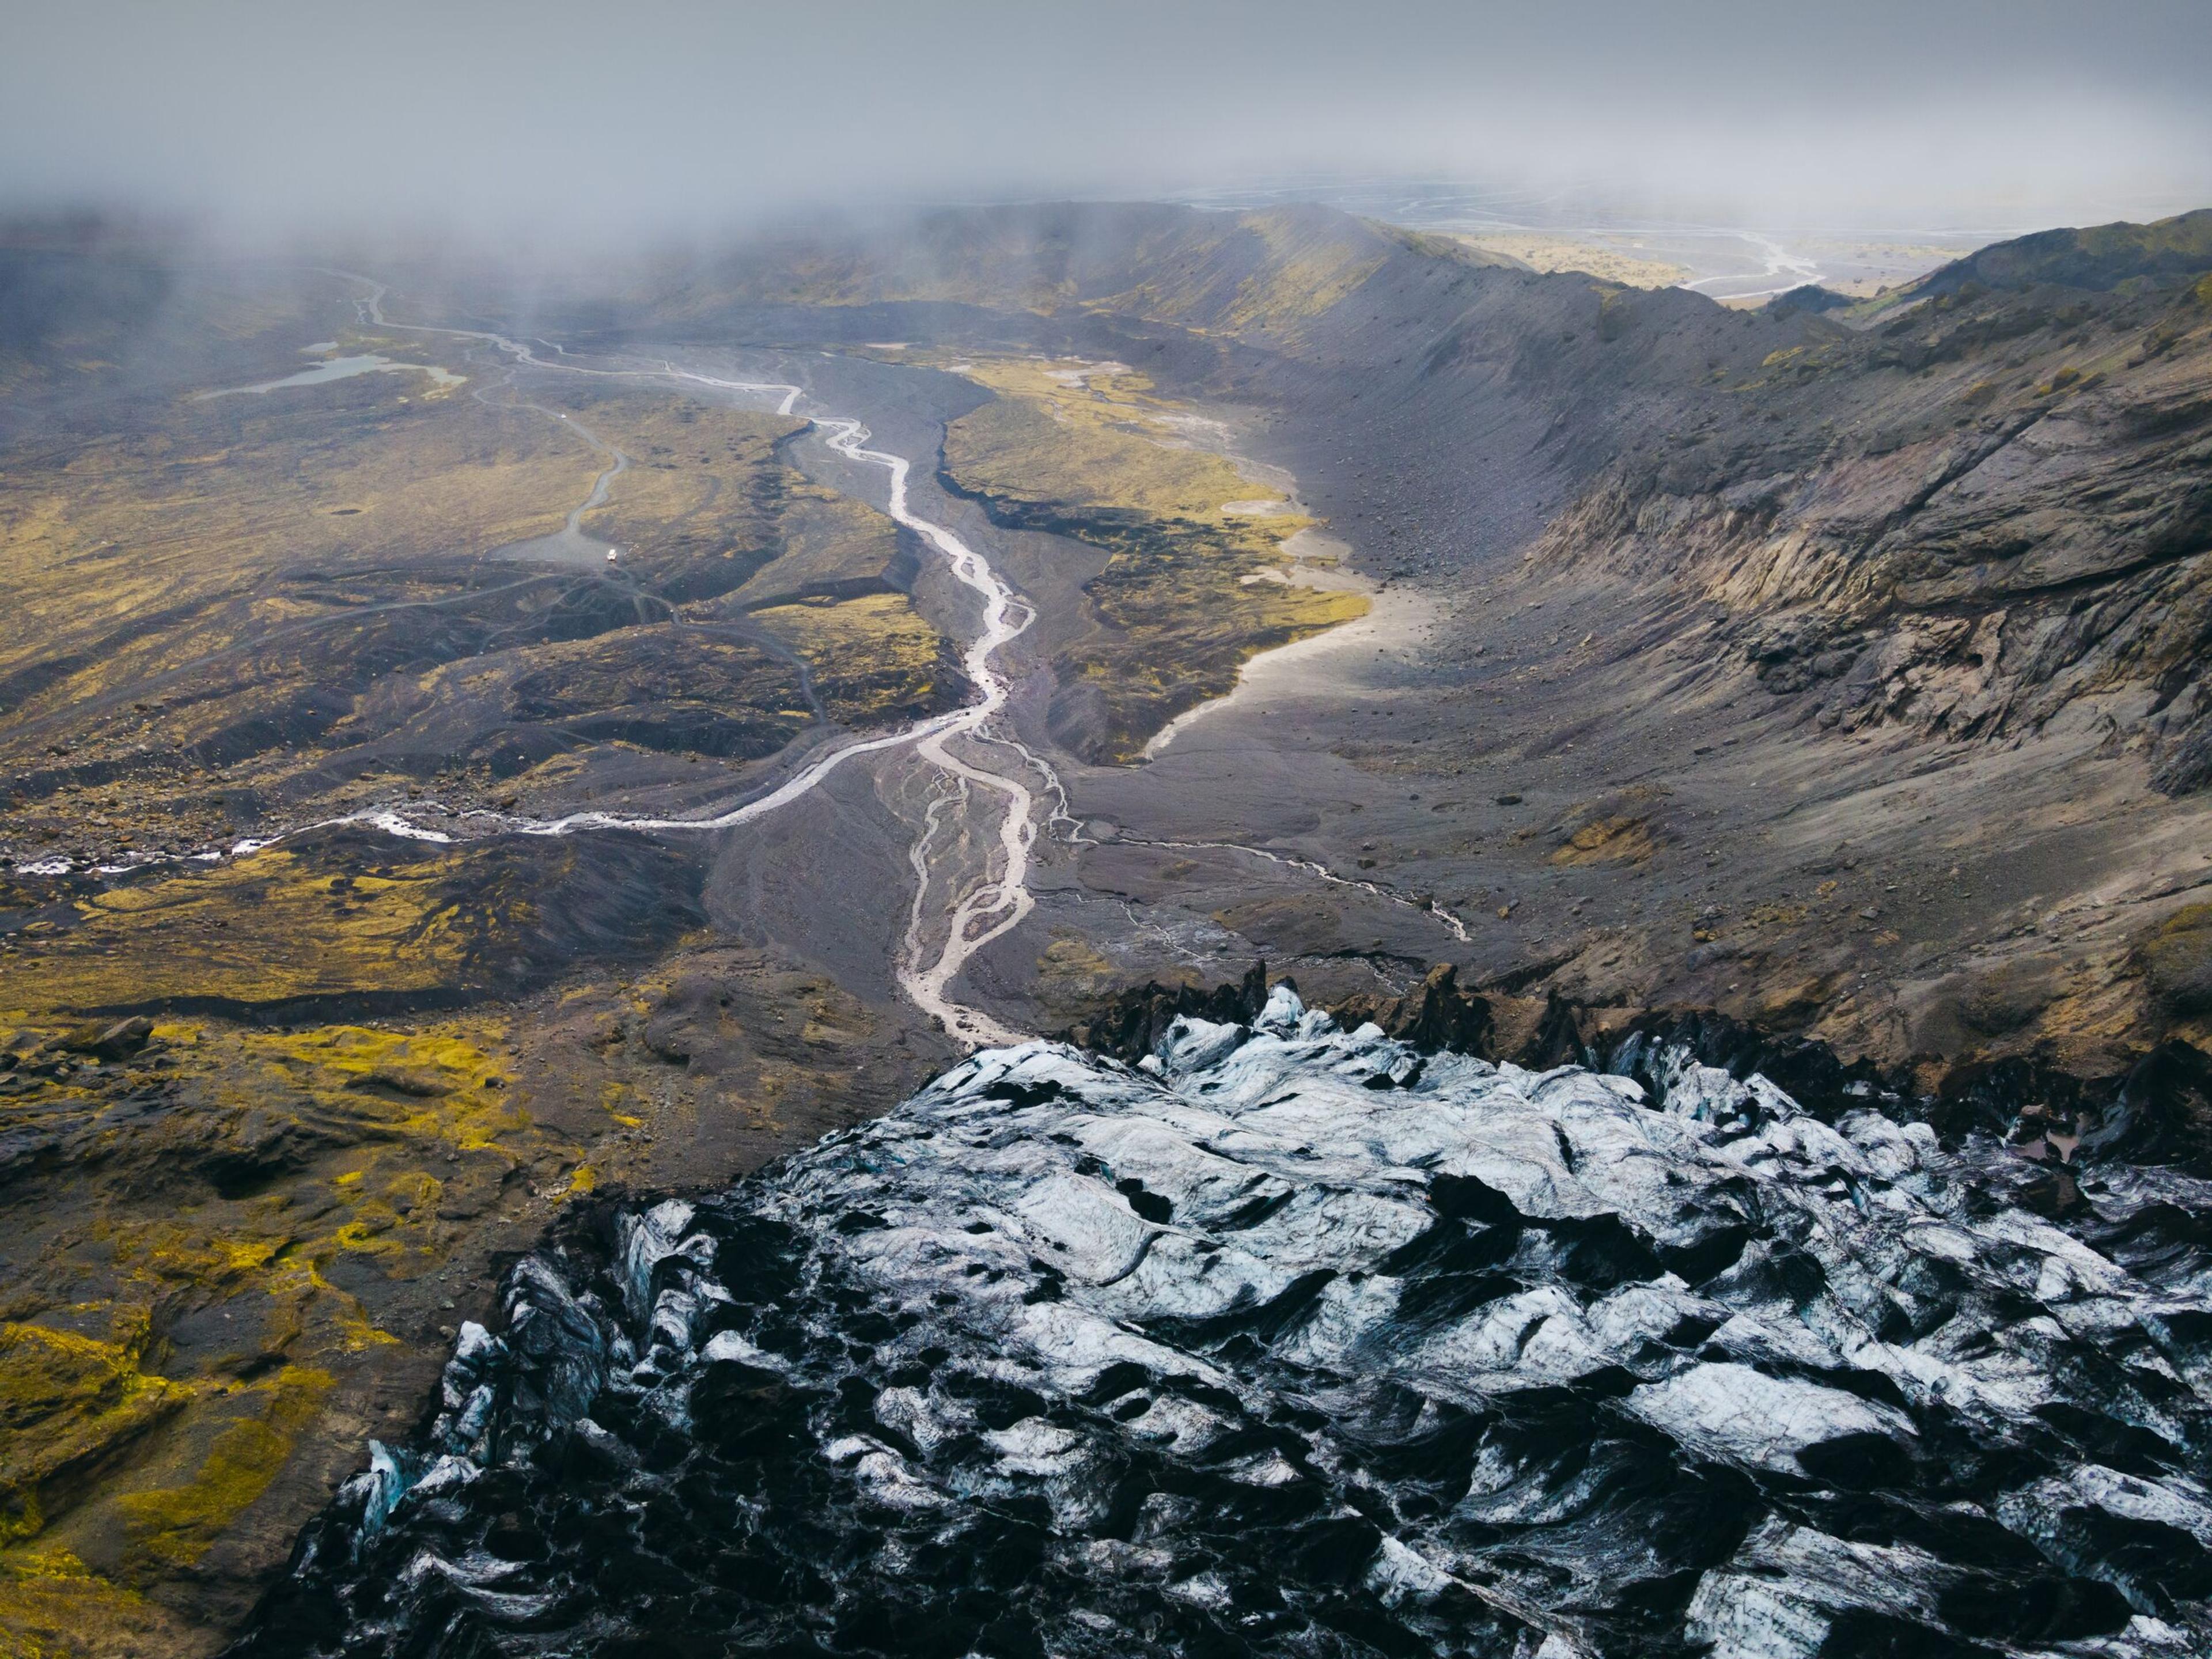 View over mountains towards glacier in Þórsmörk